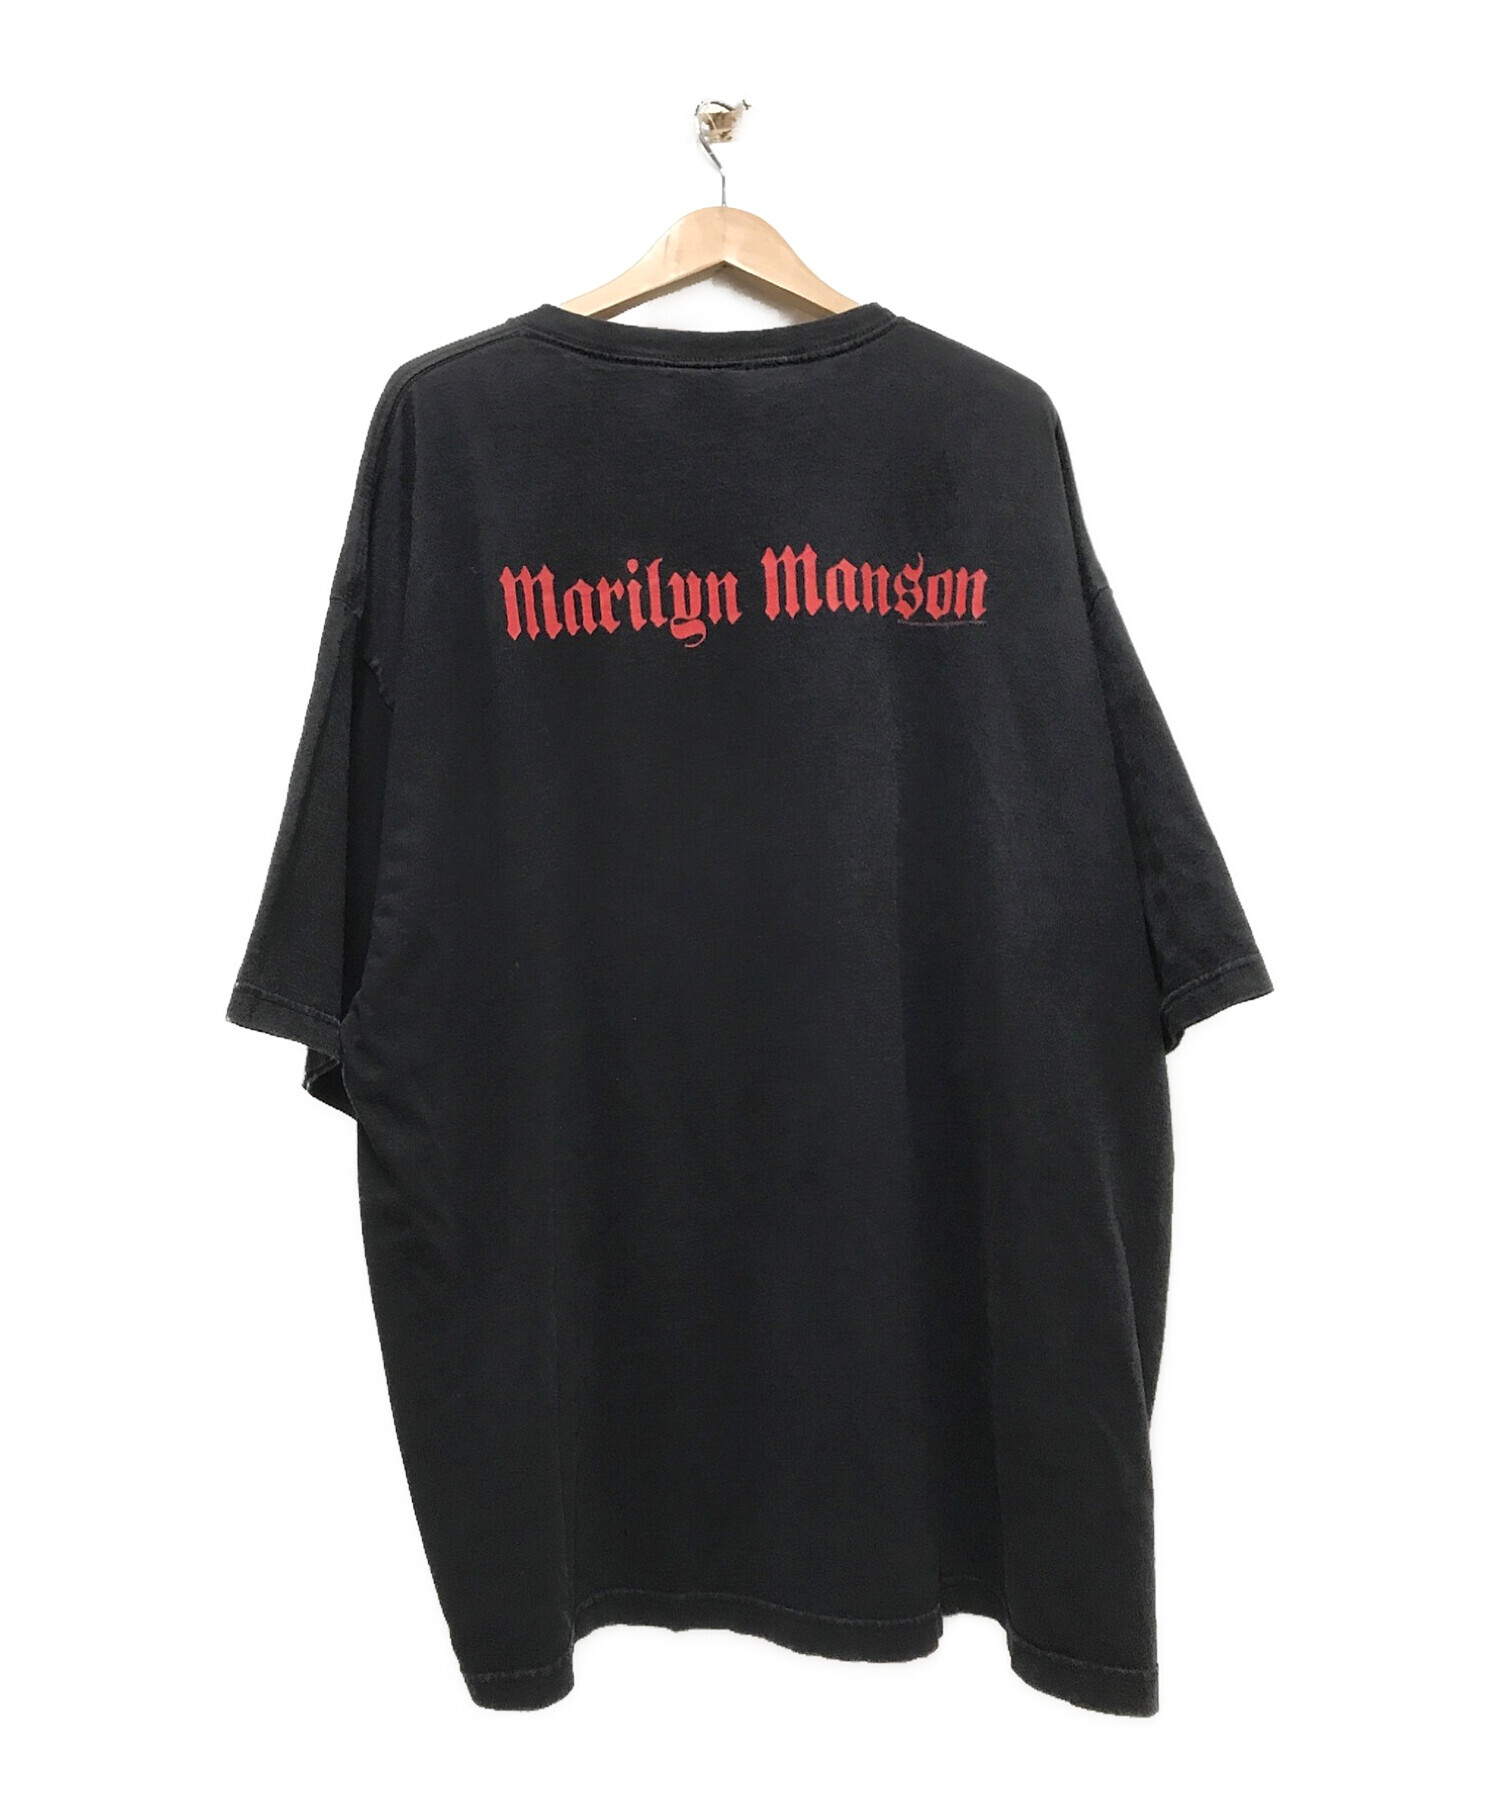 Marilyn Manson (マリリンマンソン) 00`sヴィンテージアーティストTEE ブラック サイズ:XXXL